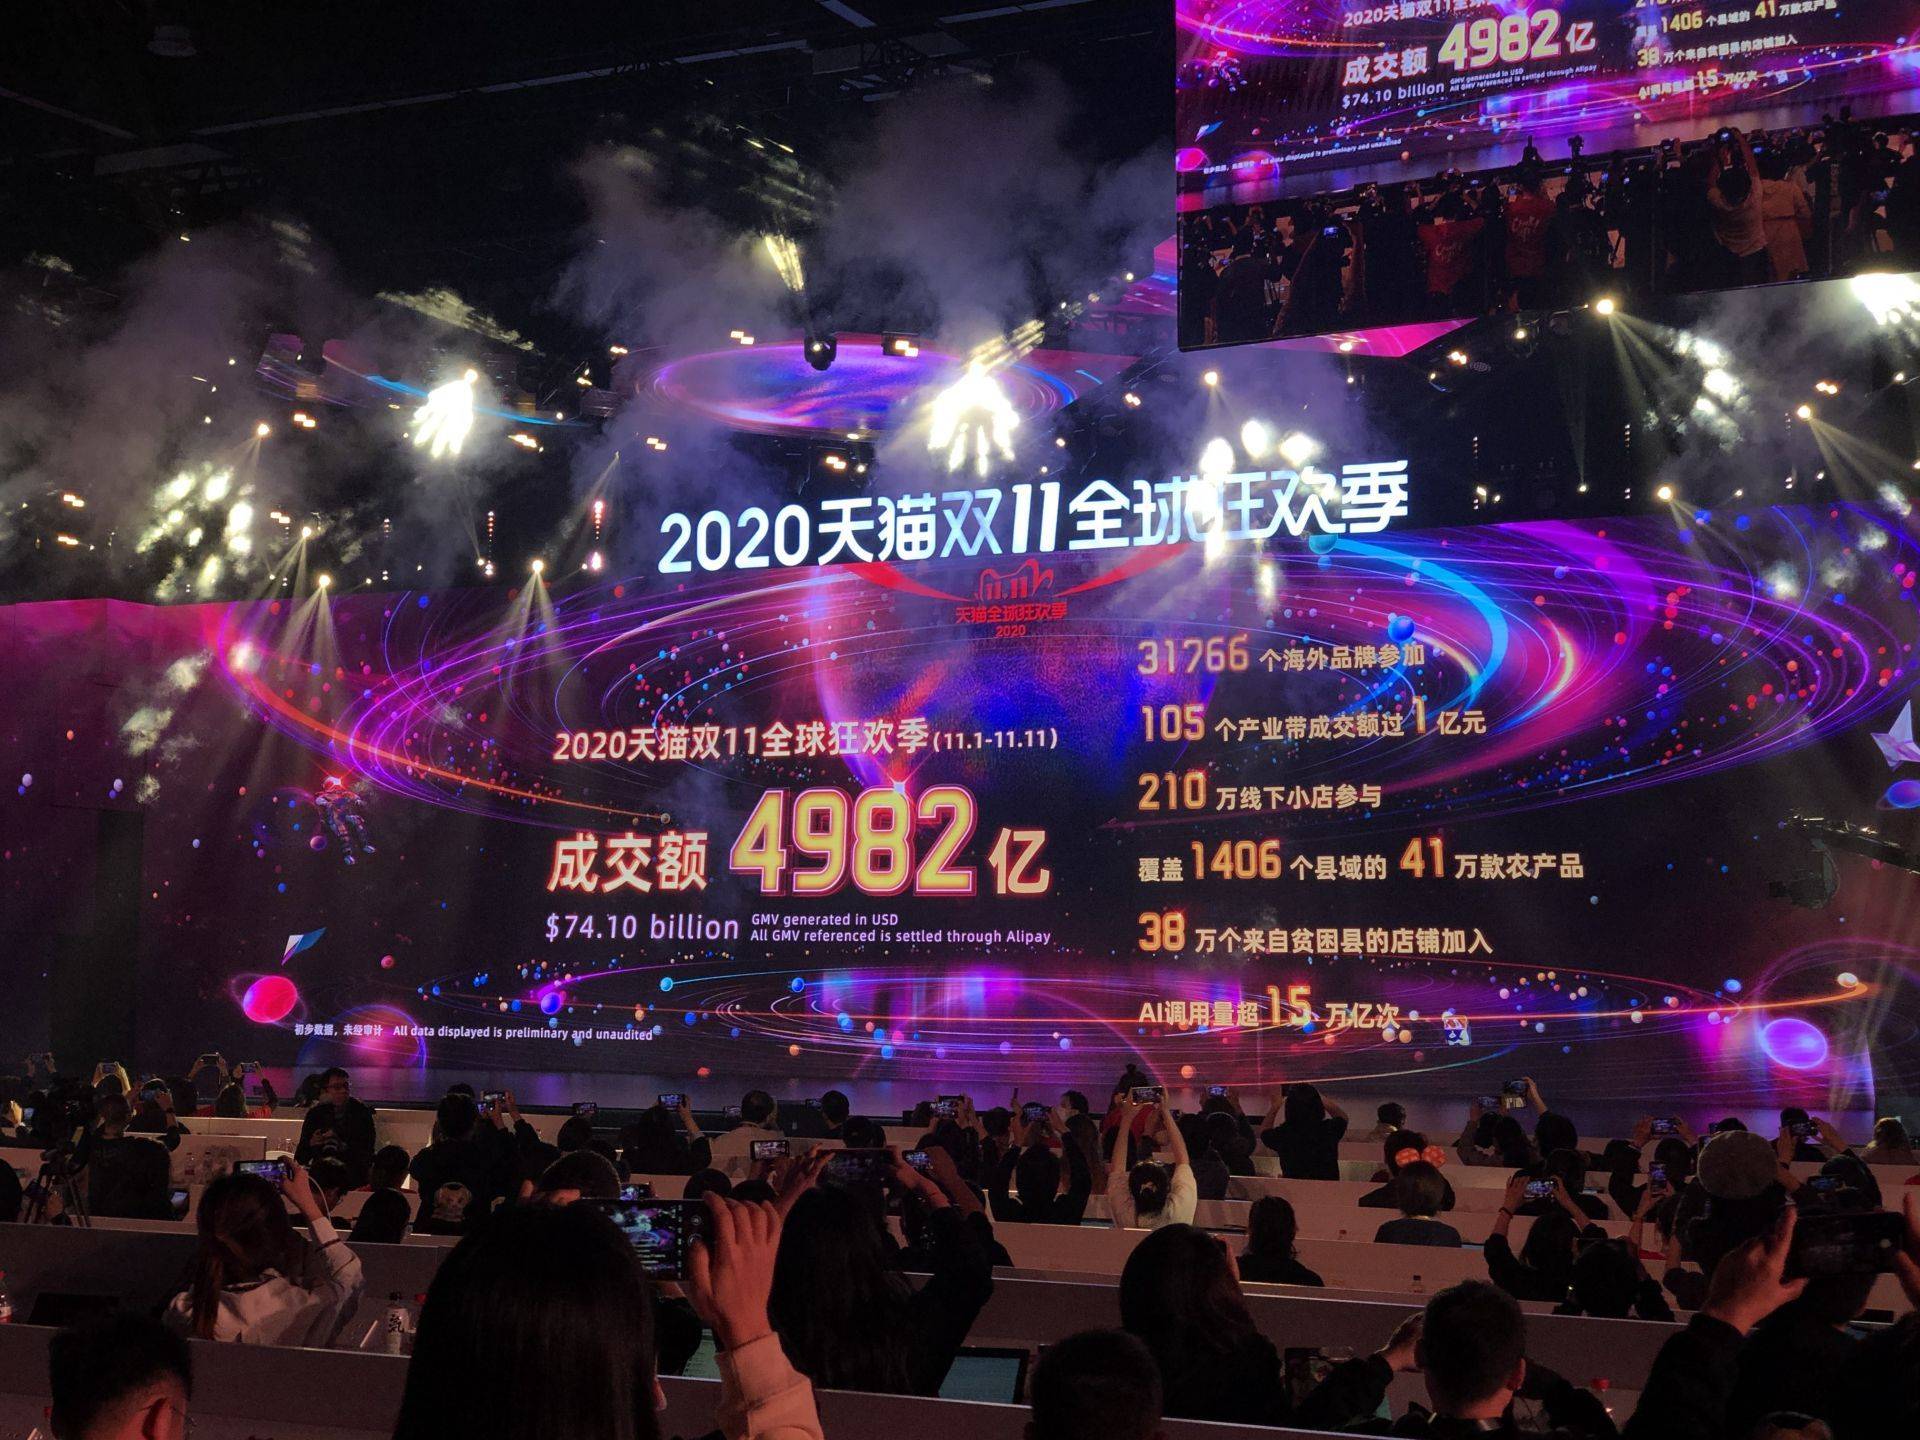 2020天猫双11成交破4982亿元,青岛霸榜山东区域双11